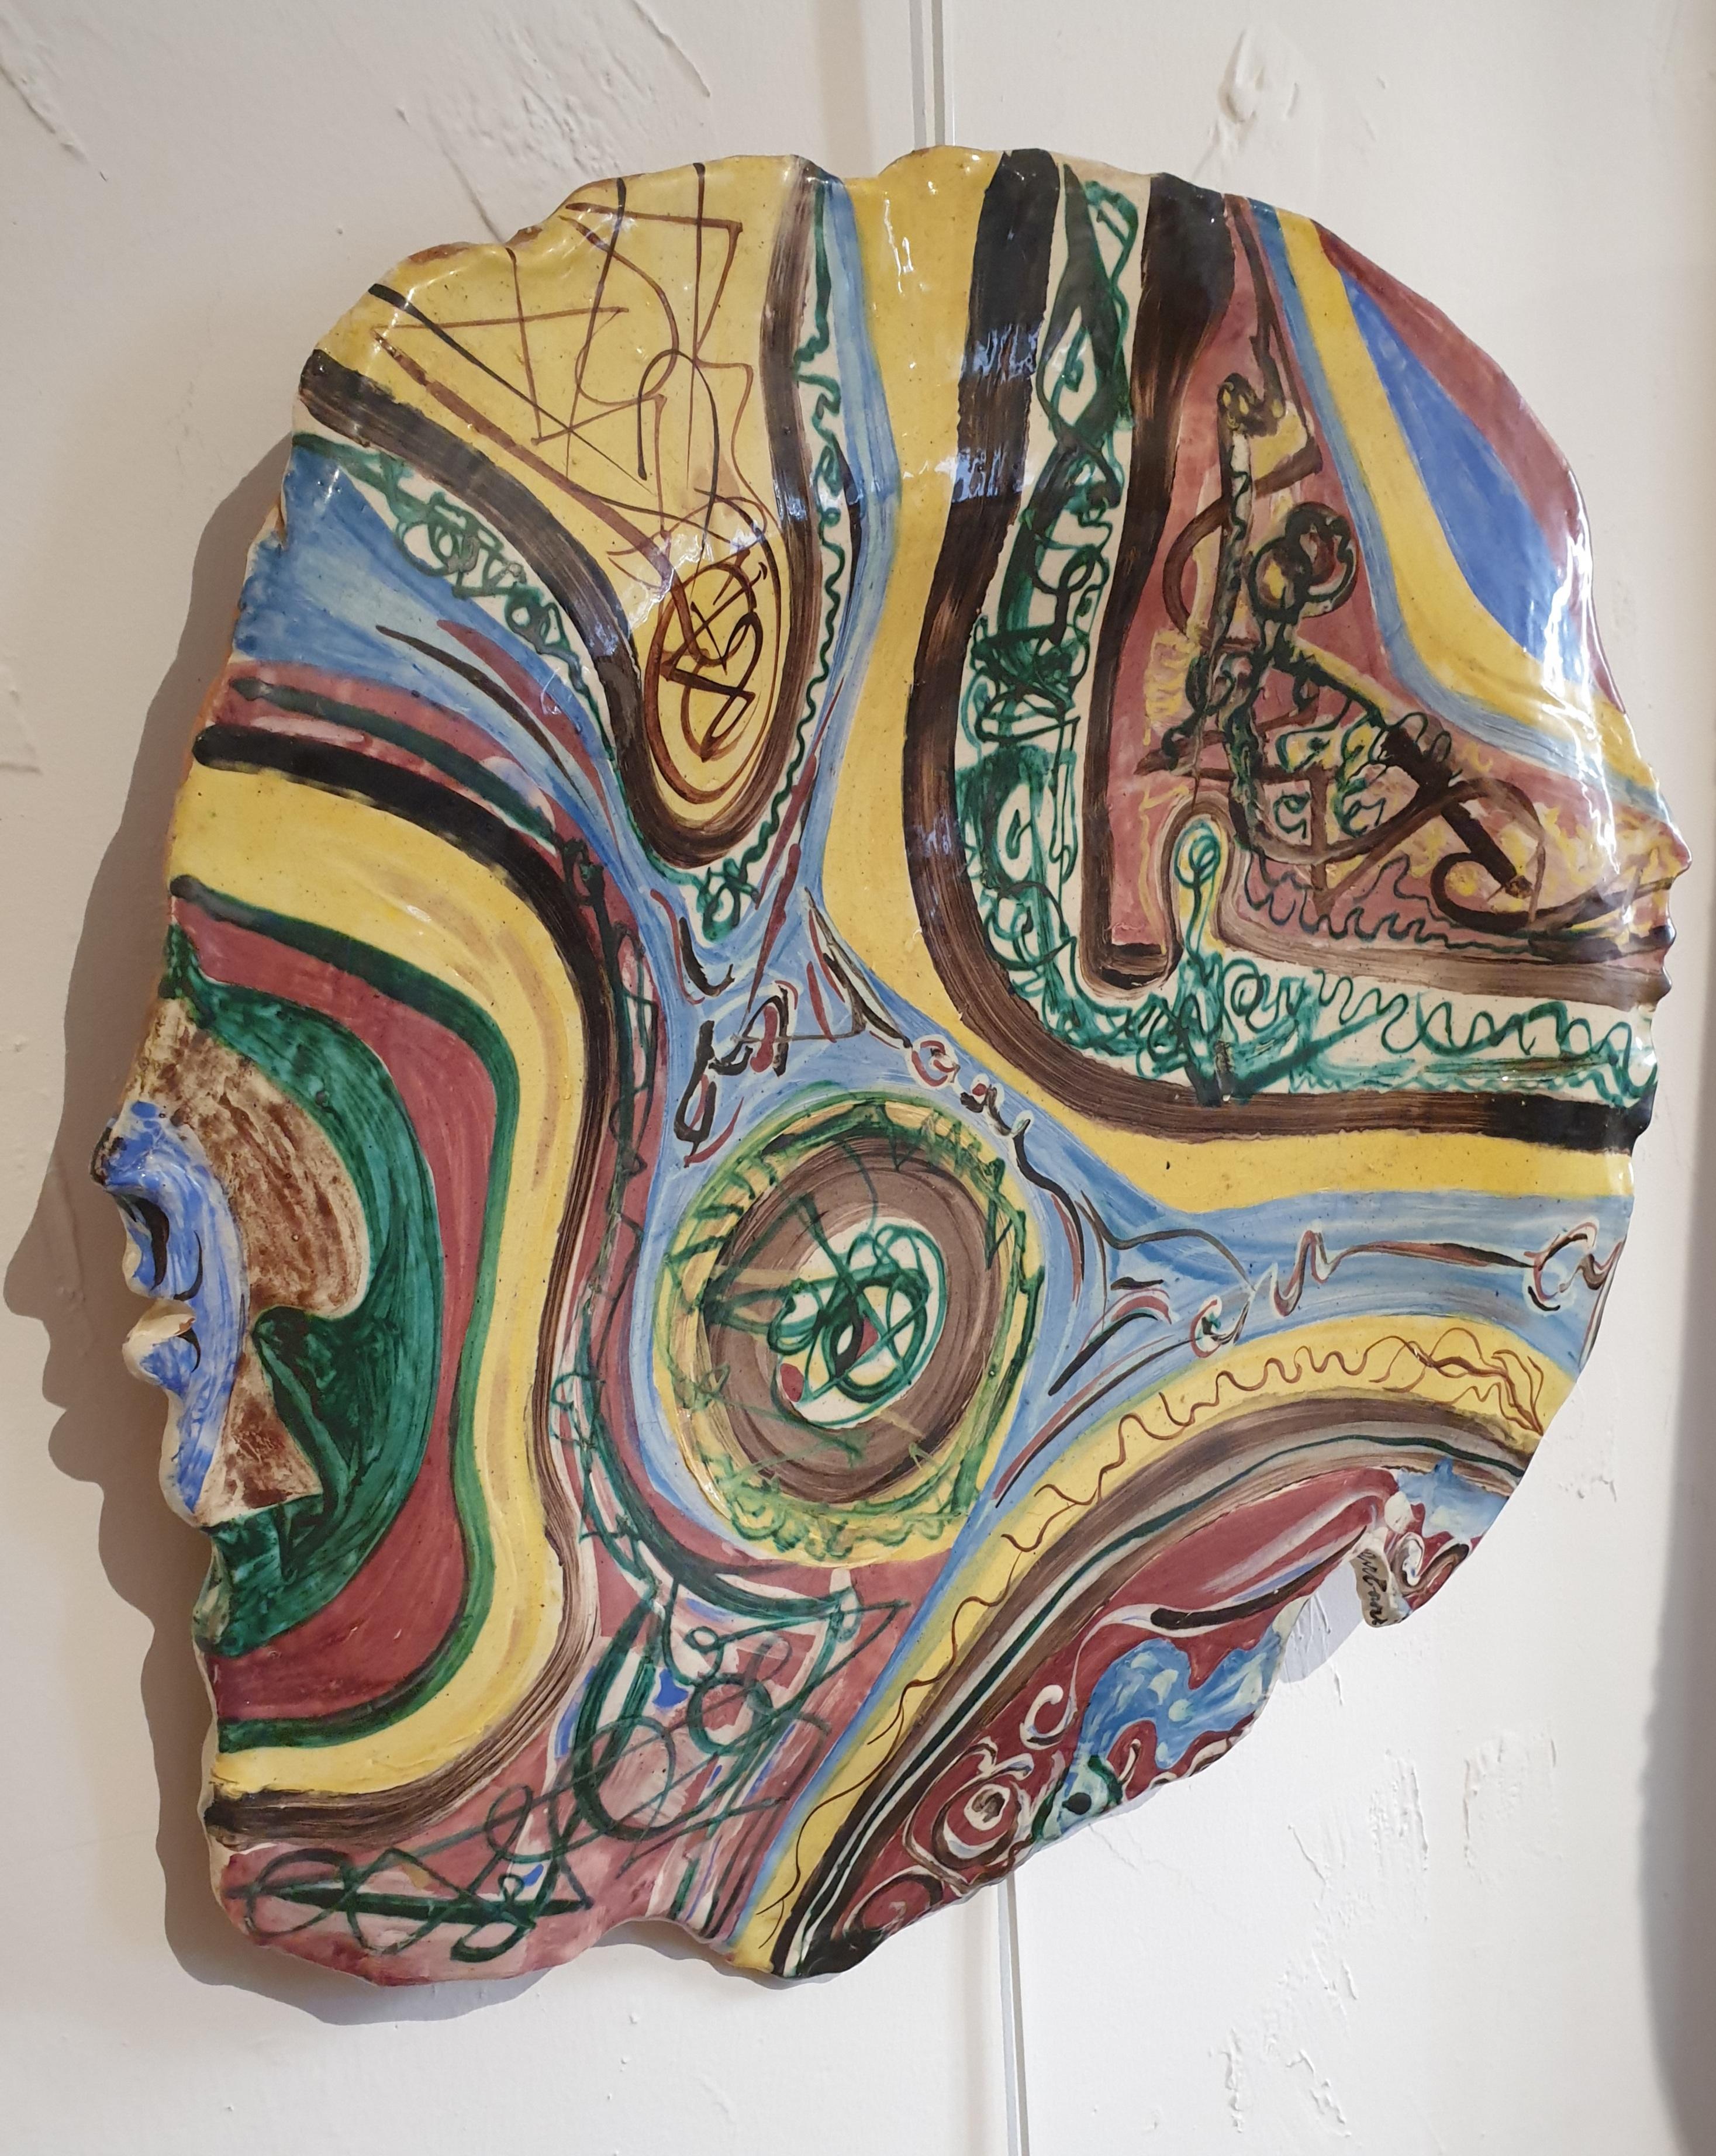 Abstrakte, etruskisch inspirierte dekorative Keramik. – Sculpture von Claude Urbani